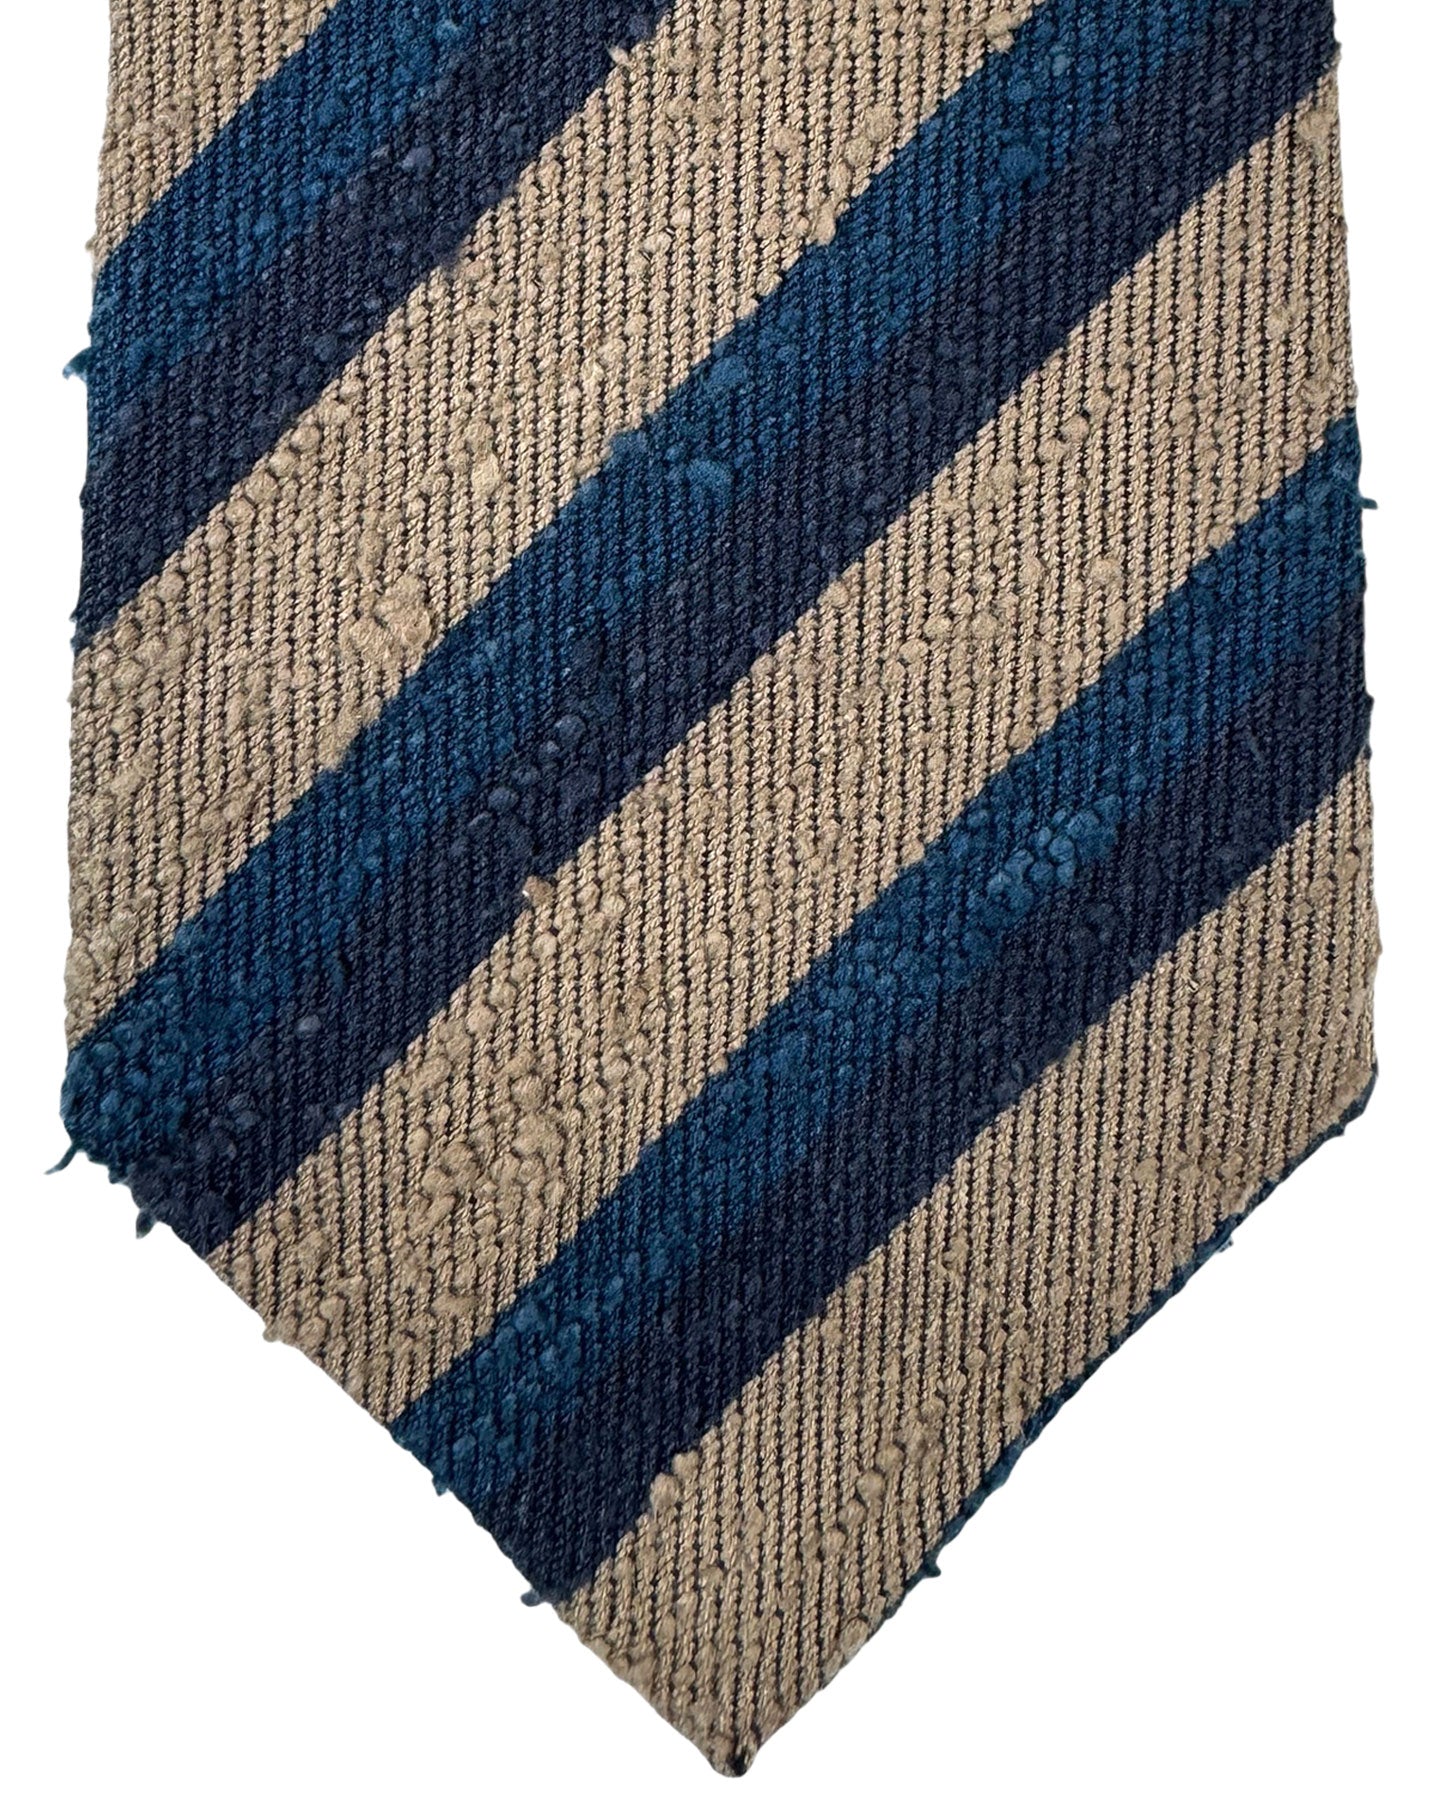 Kiton Silk Tie Coffee Brown Midnight Blue Stripes Design - Sevenfold Necktie